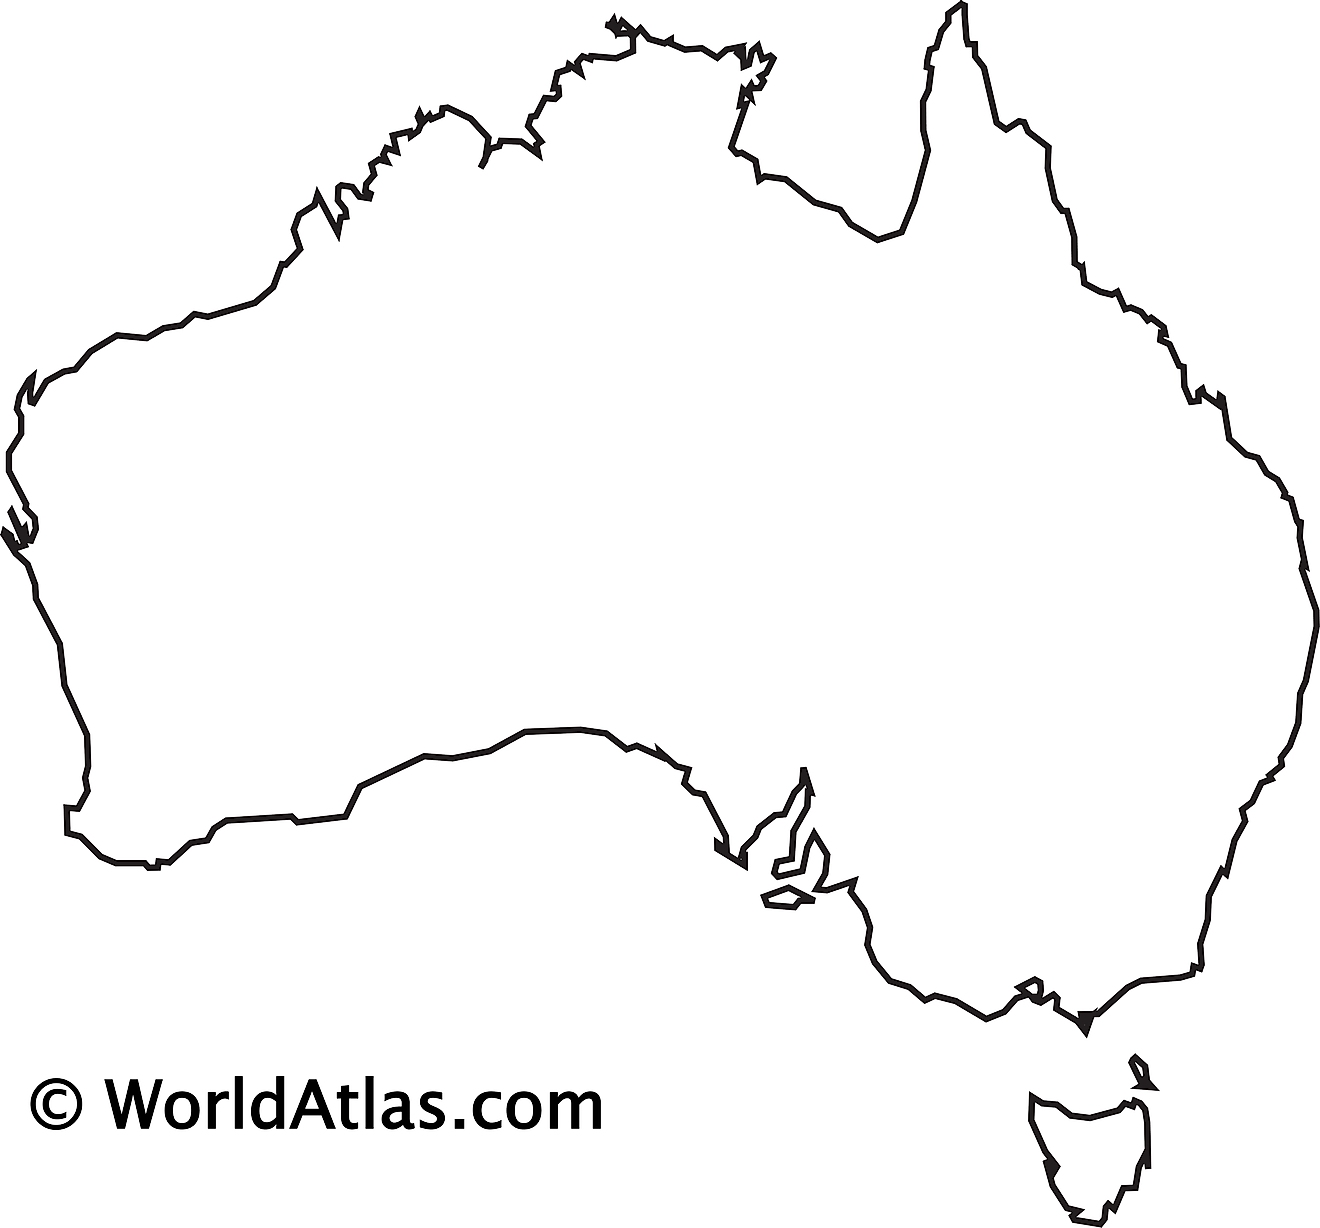 Blank outline map of Australia